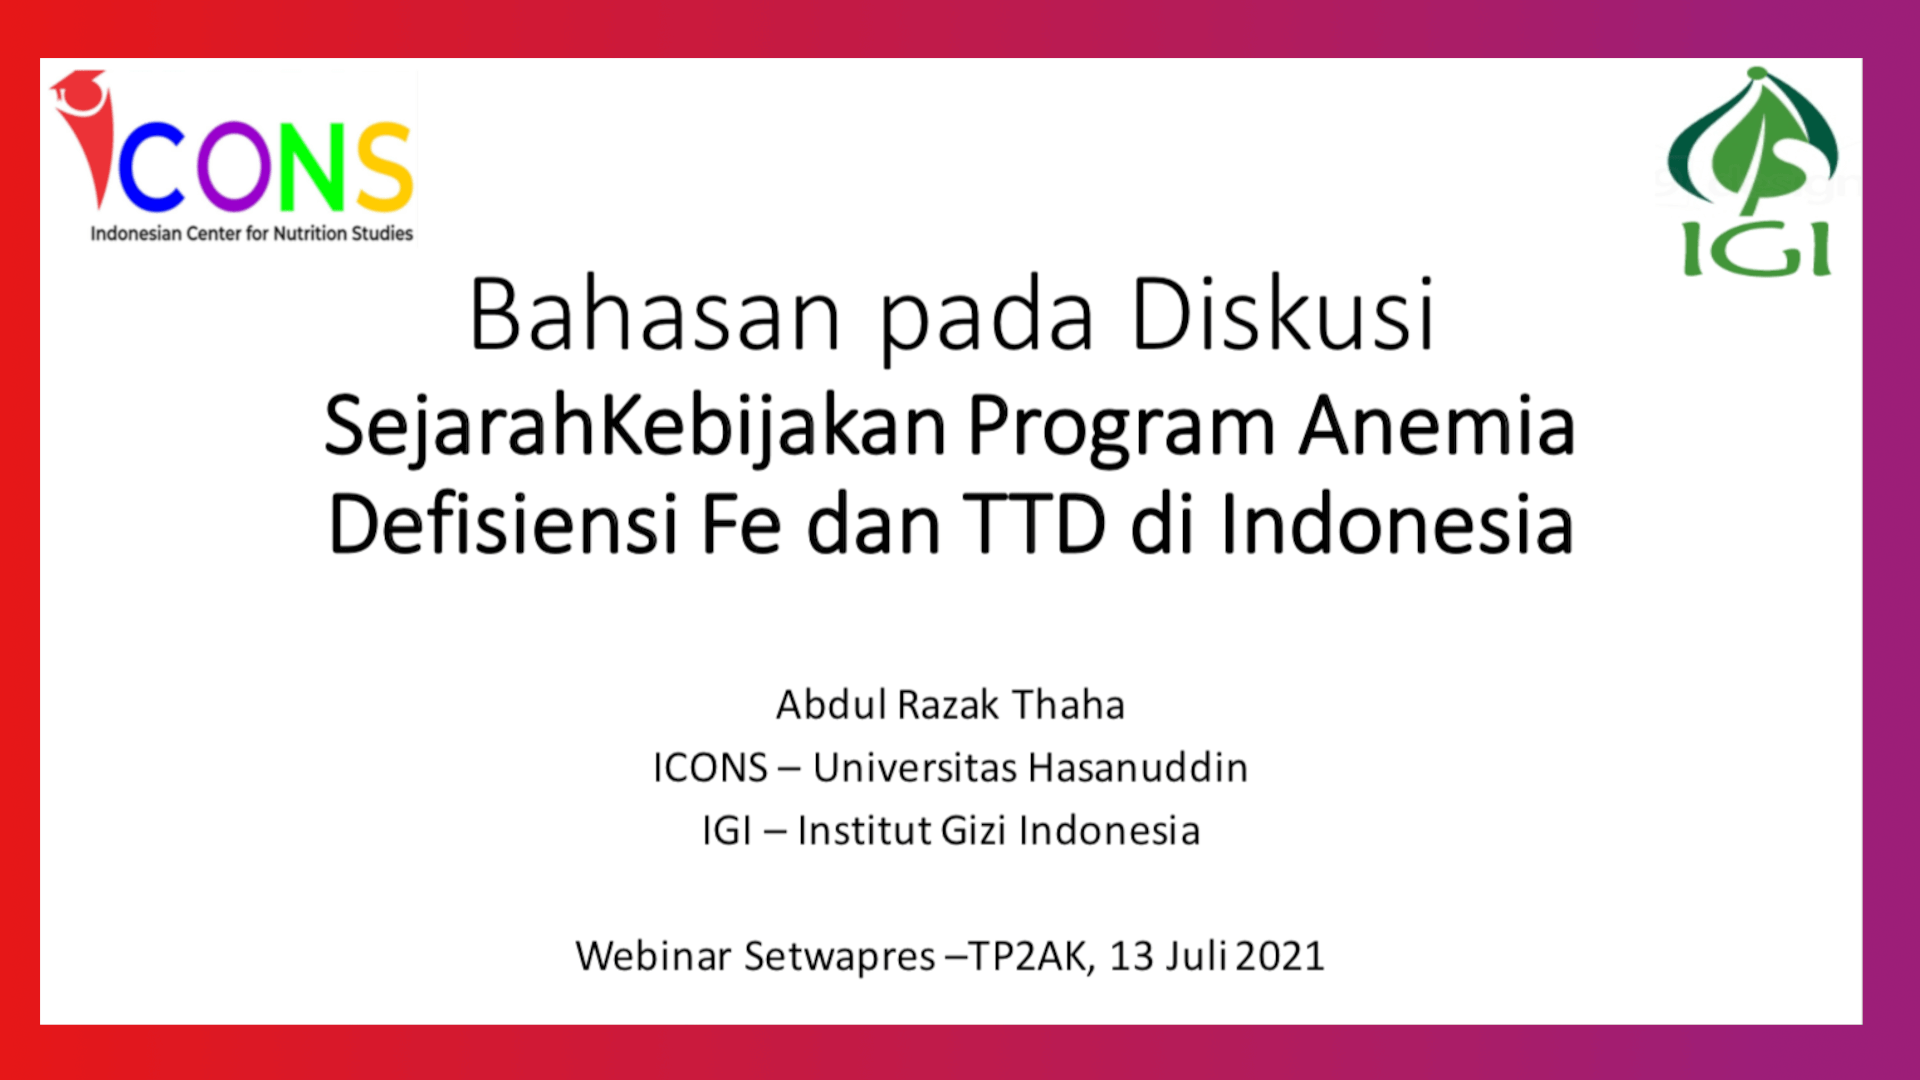 Sejarah Kebijakan Program Anemia Defisiensi Fe dan TTD di Indonesia-Abdul Razak Thaha